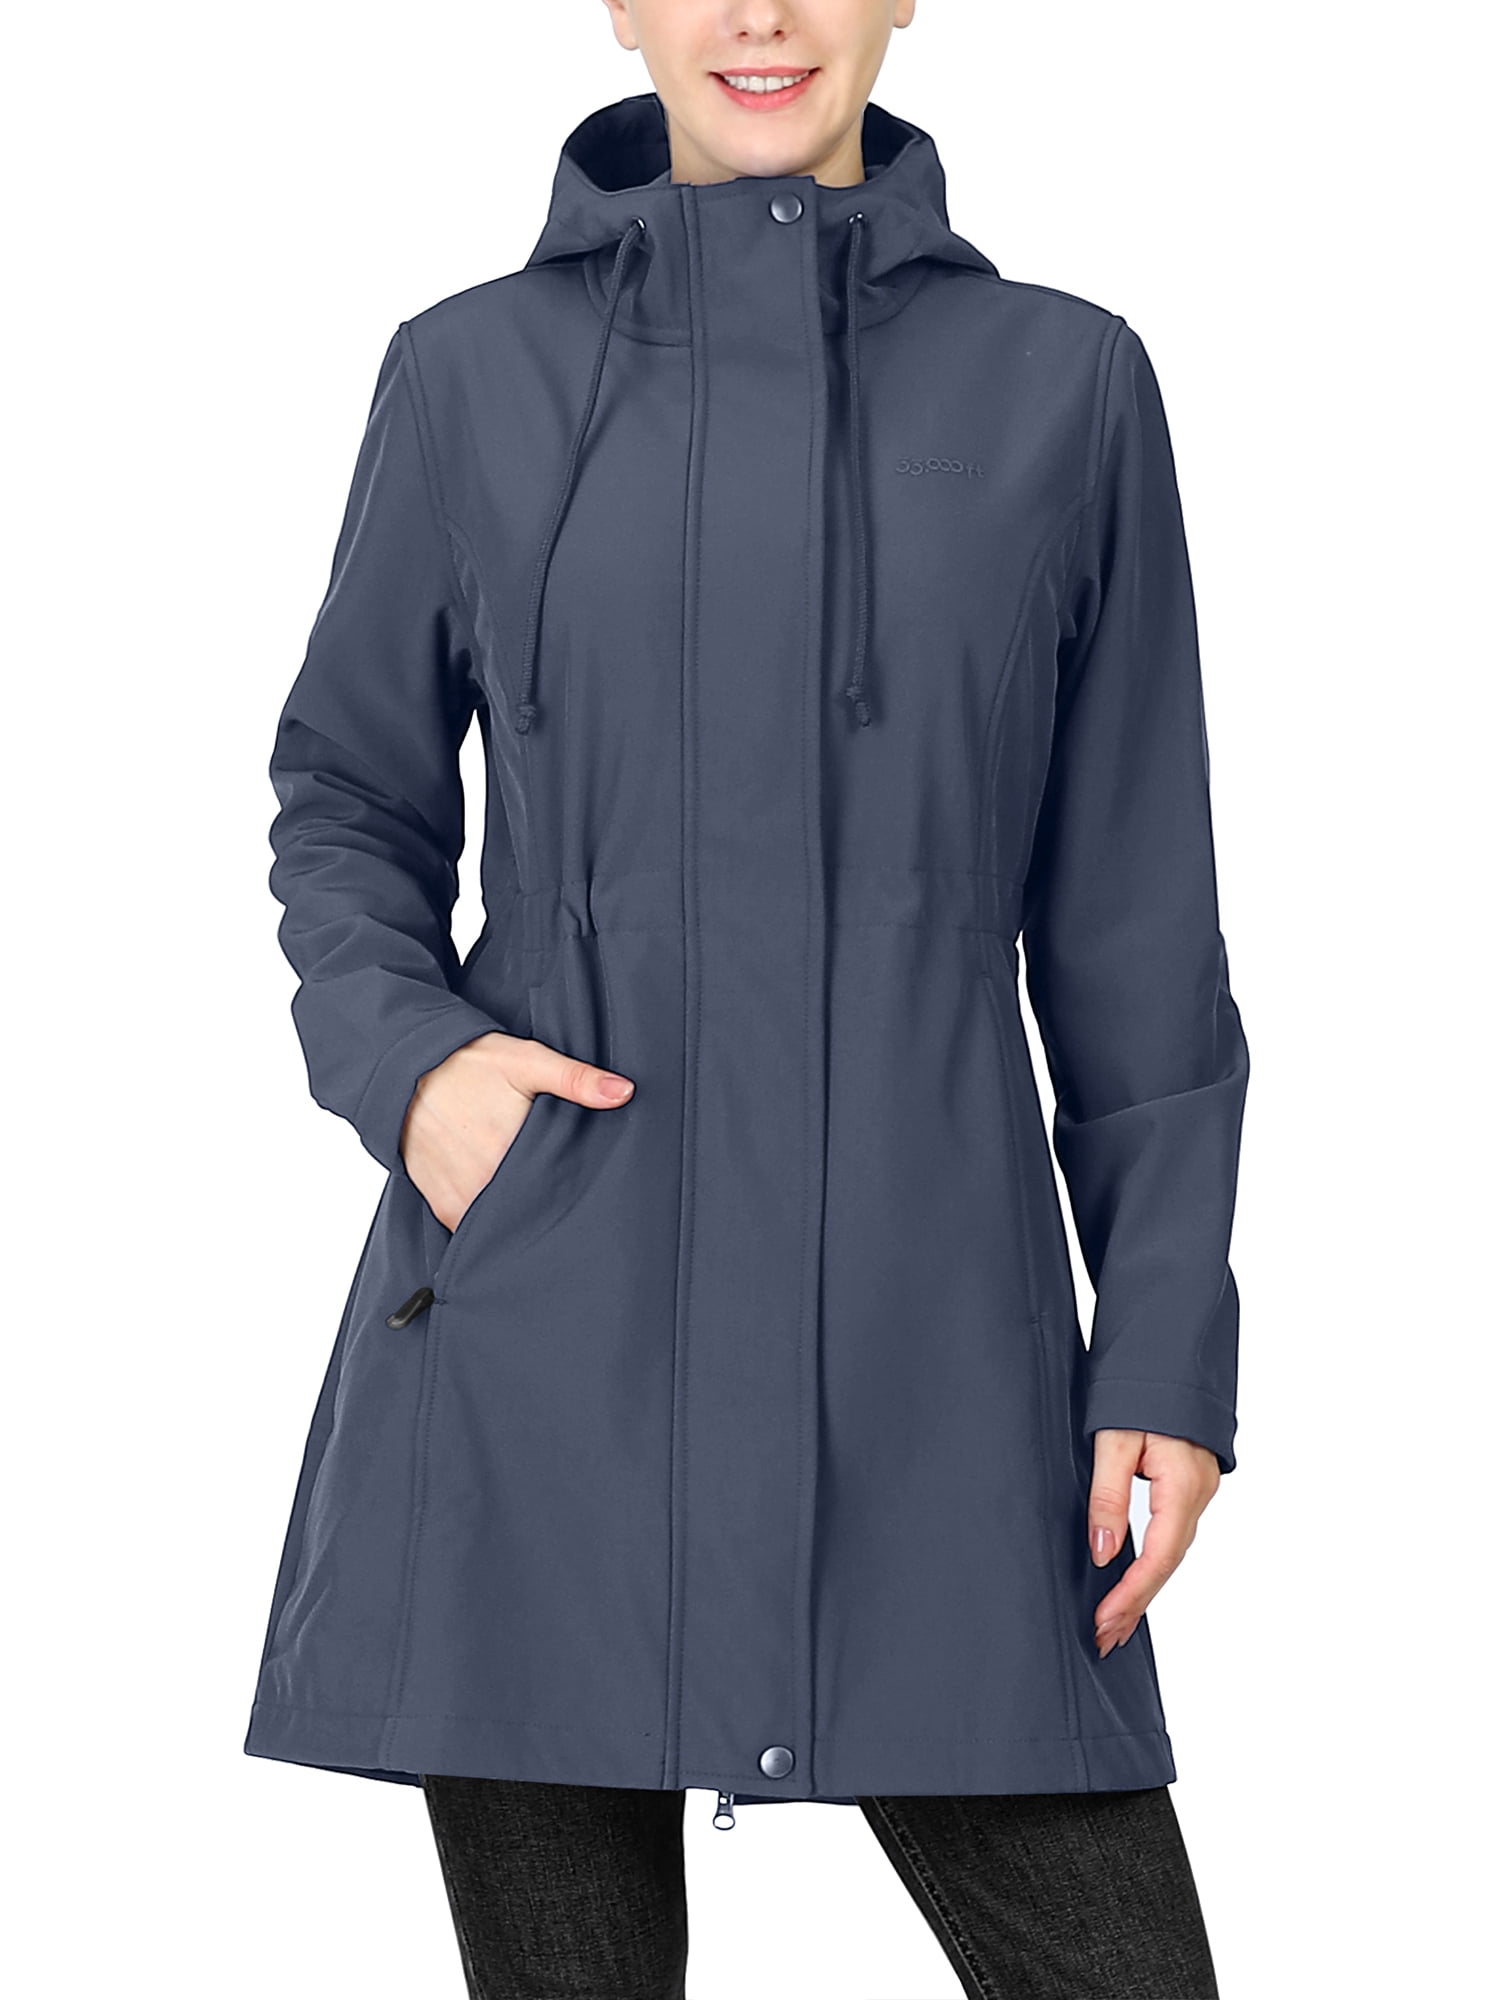 33,000ft Women's Softshell Long Jacket with Hood Fleece Lined Windproof  Warm up Waterproof Windbreaker